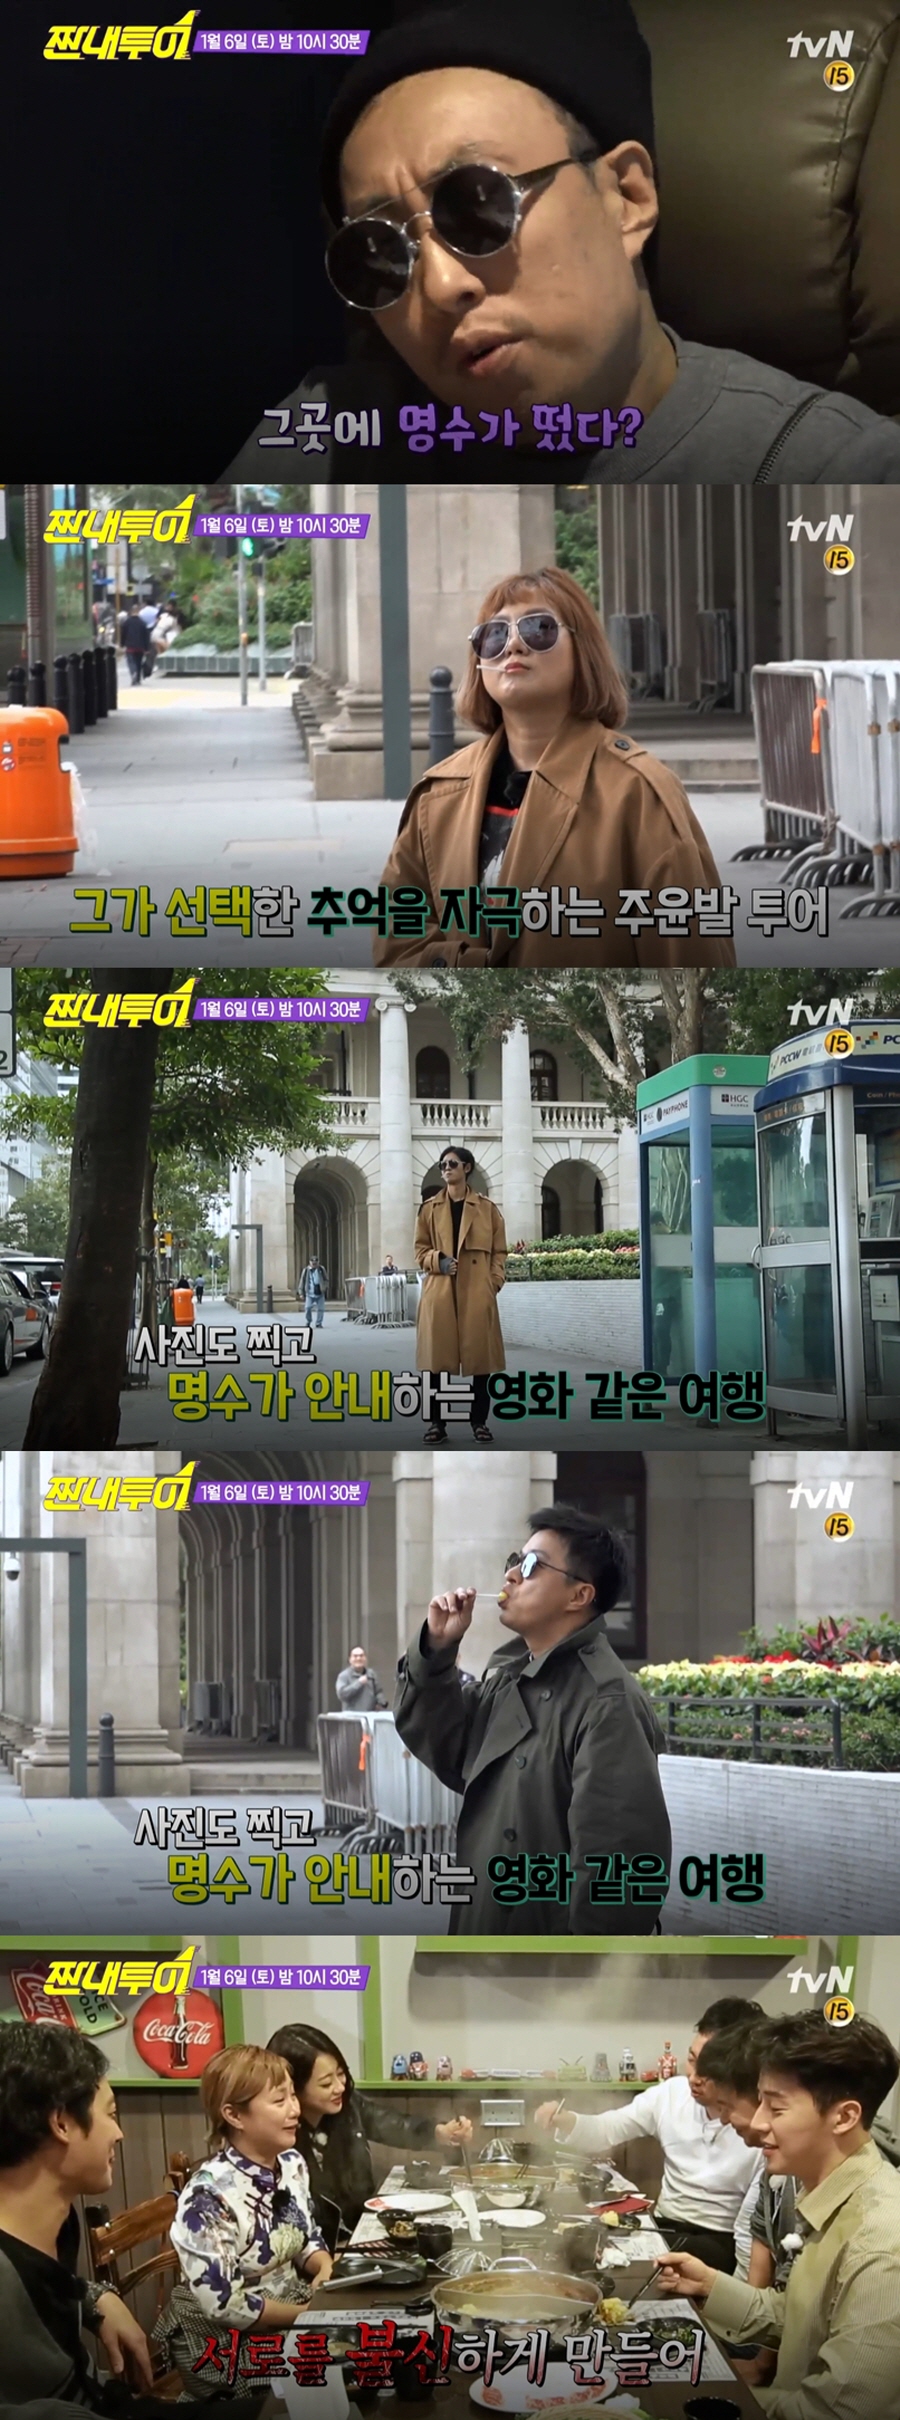 '짠내투어' 경리-허경환 게스트로 합류 / tvN 제공 